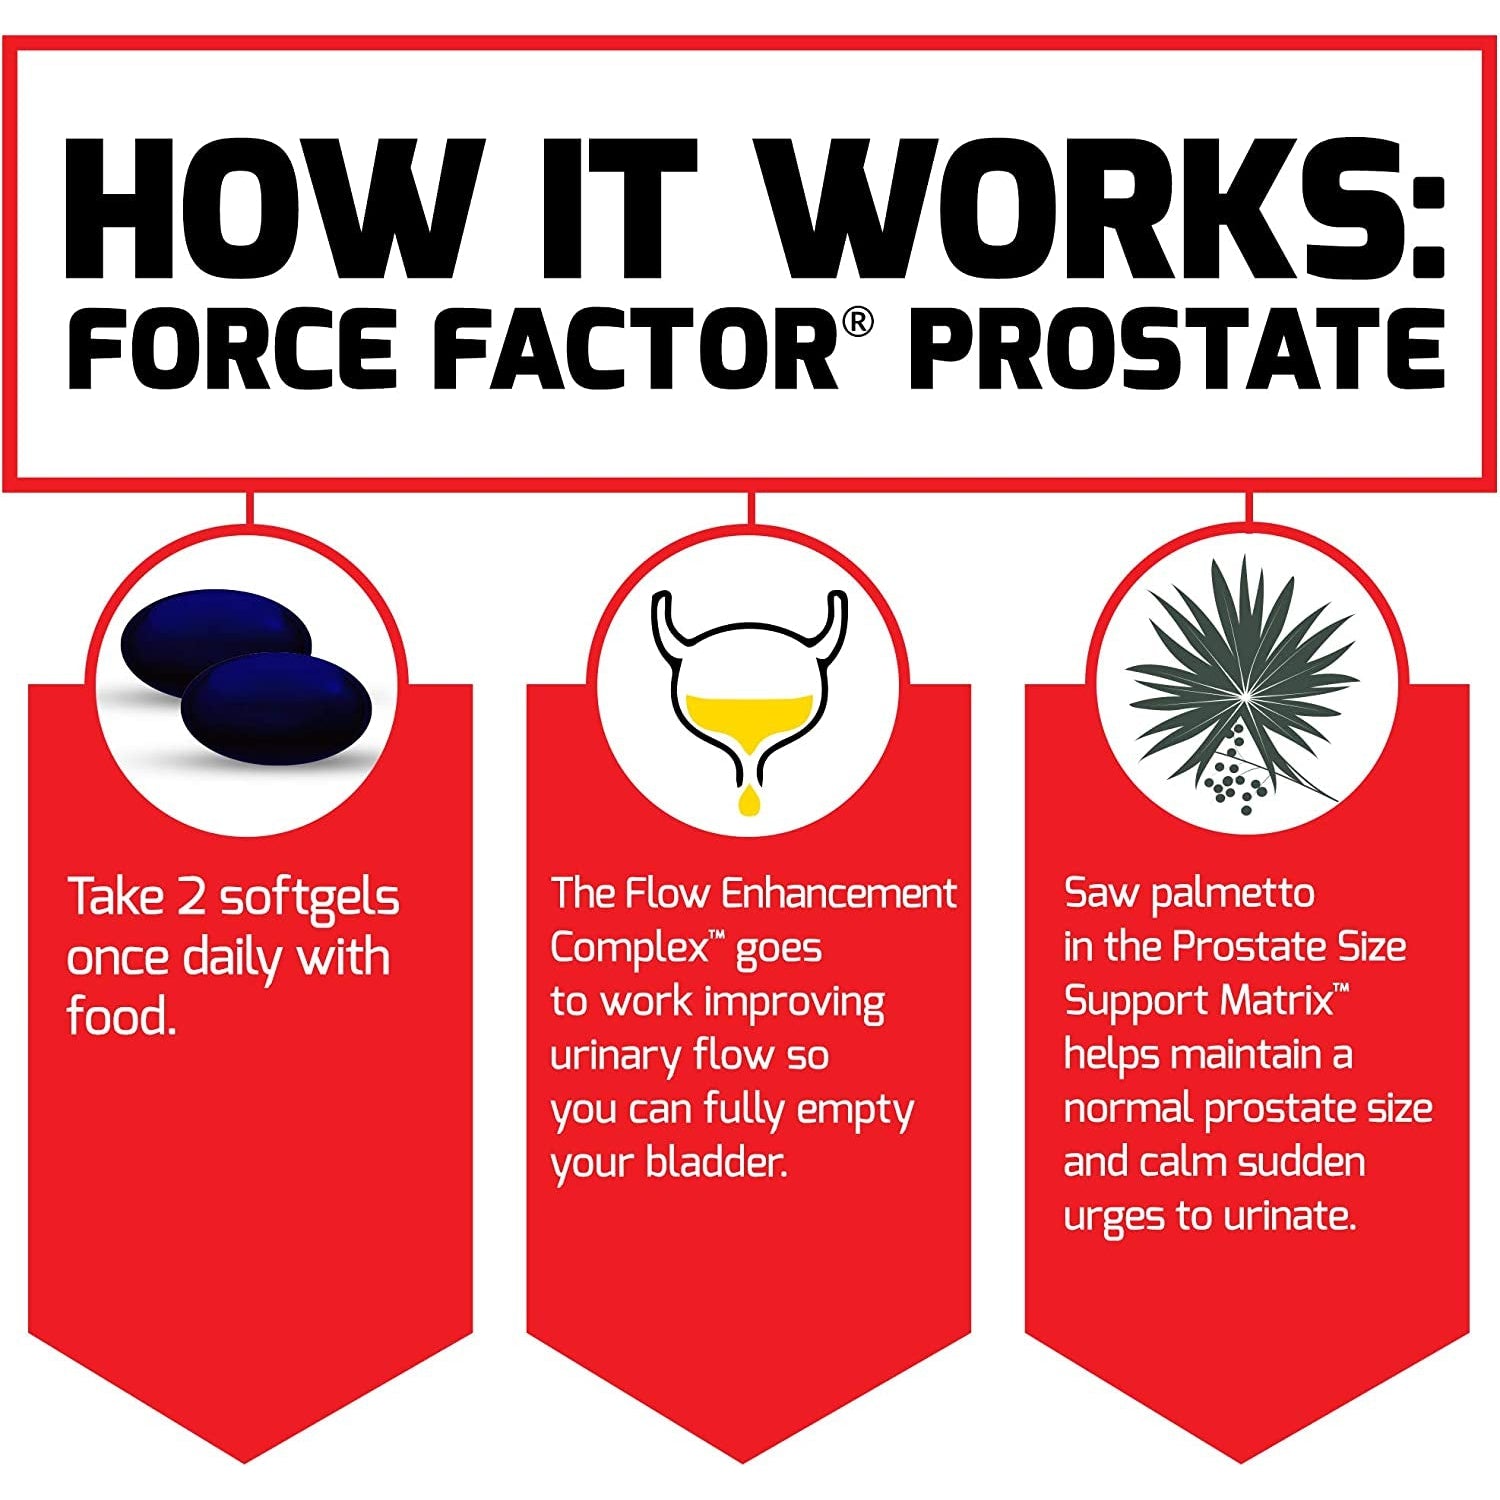 Force Factor Prostate for Men